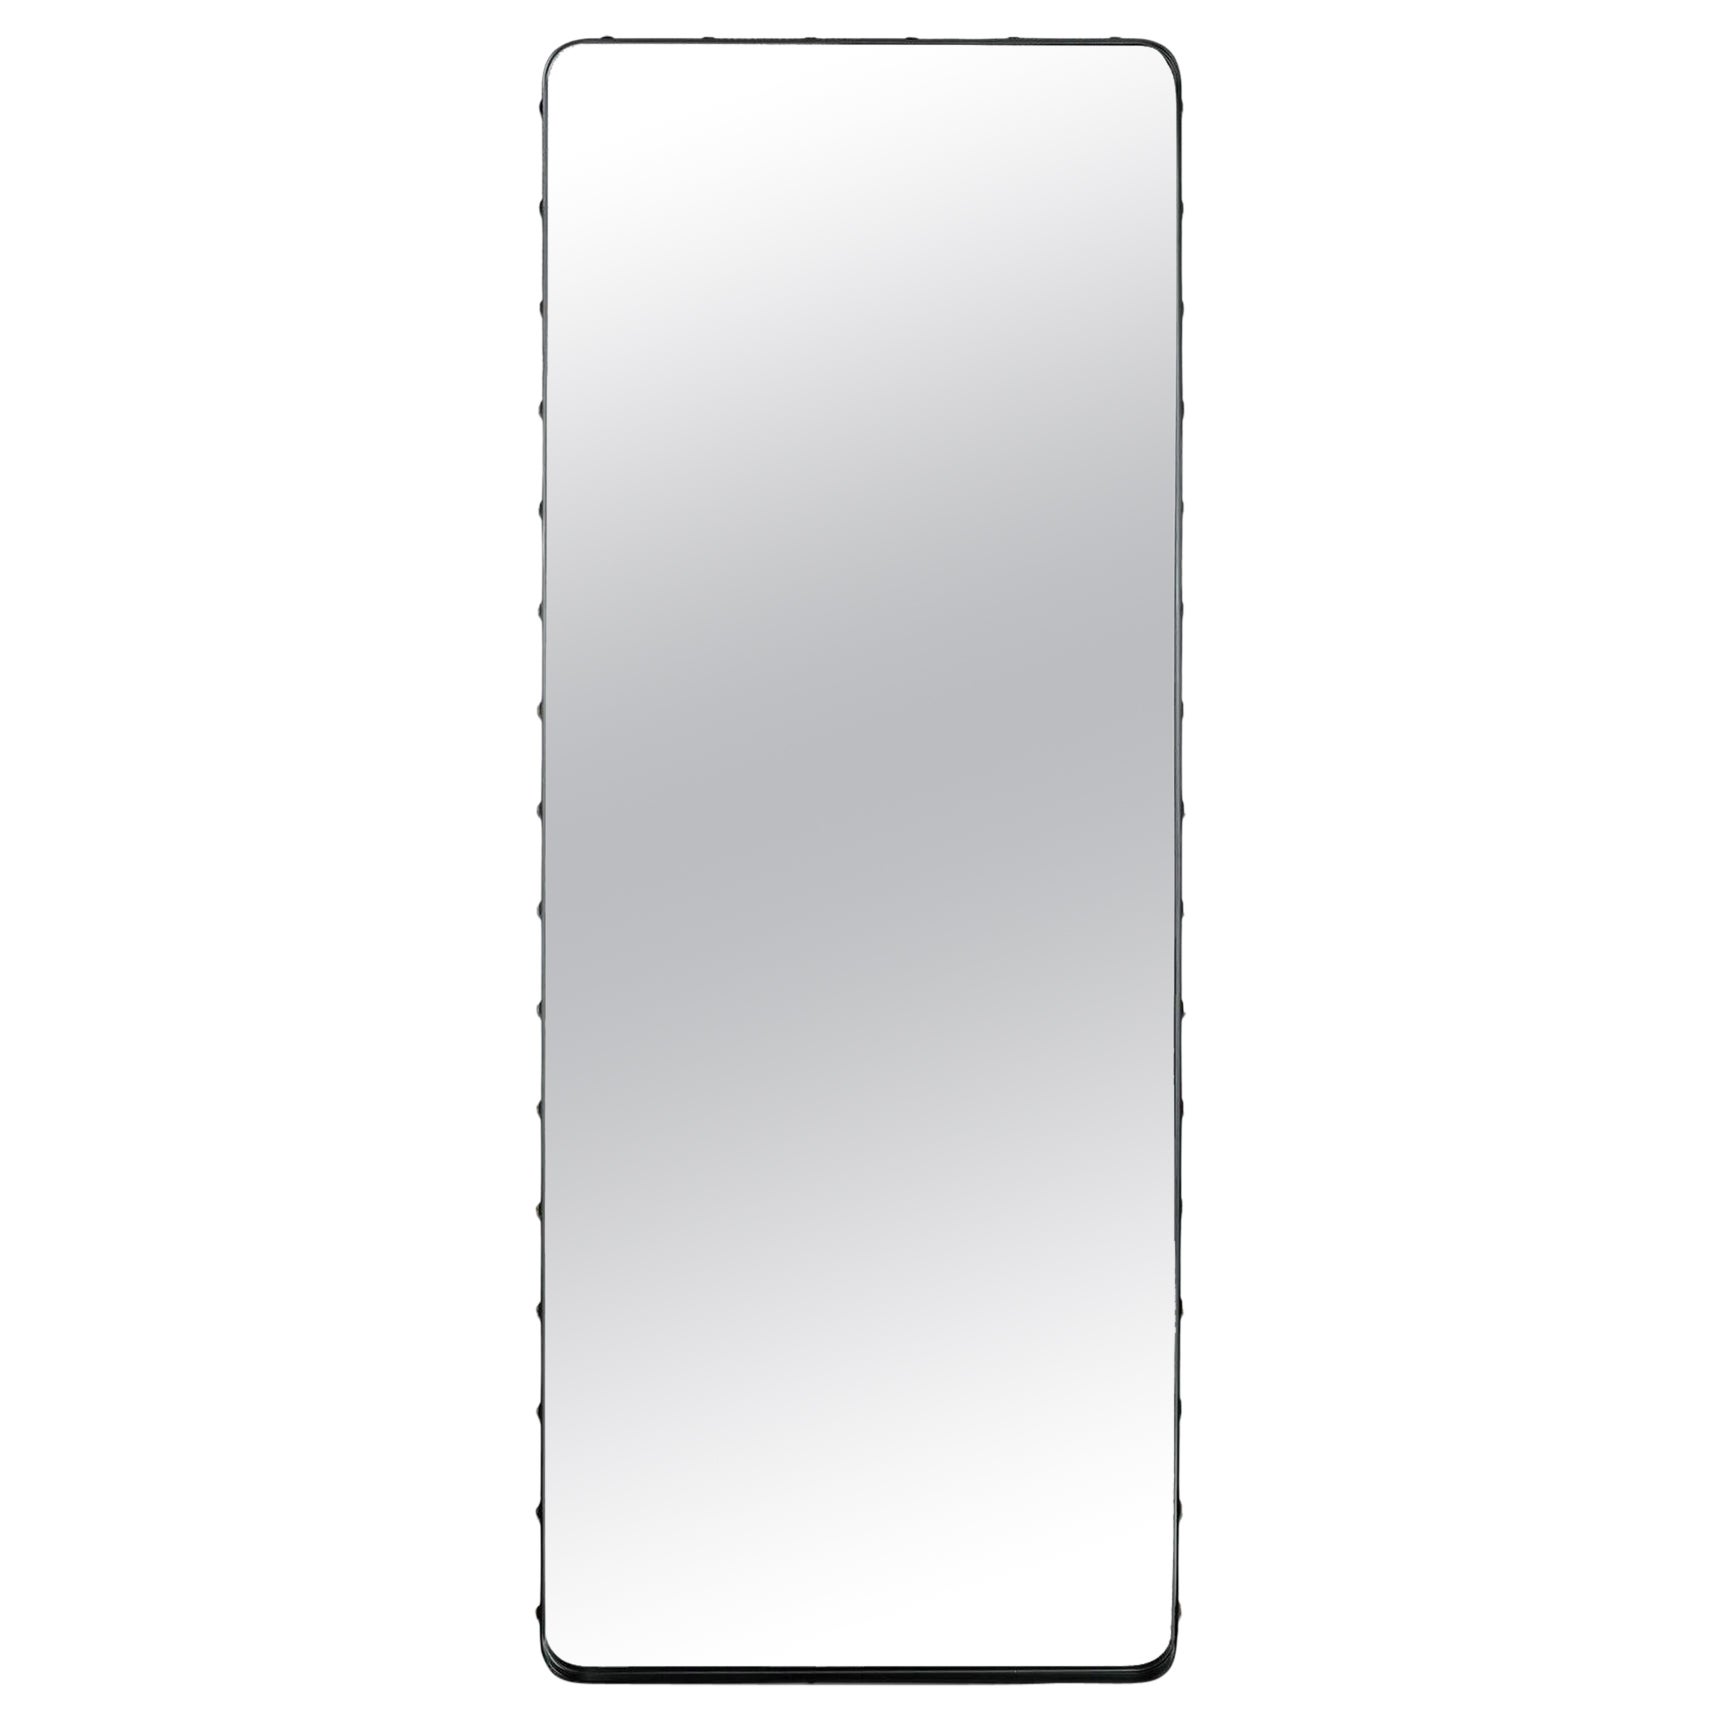 Adnet Rectangular Mirror by Gubi, Large